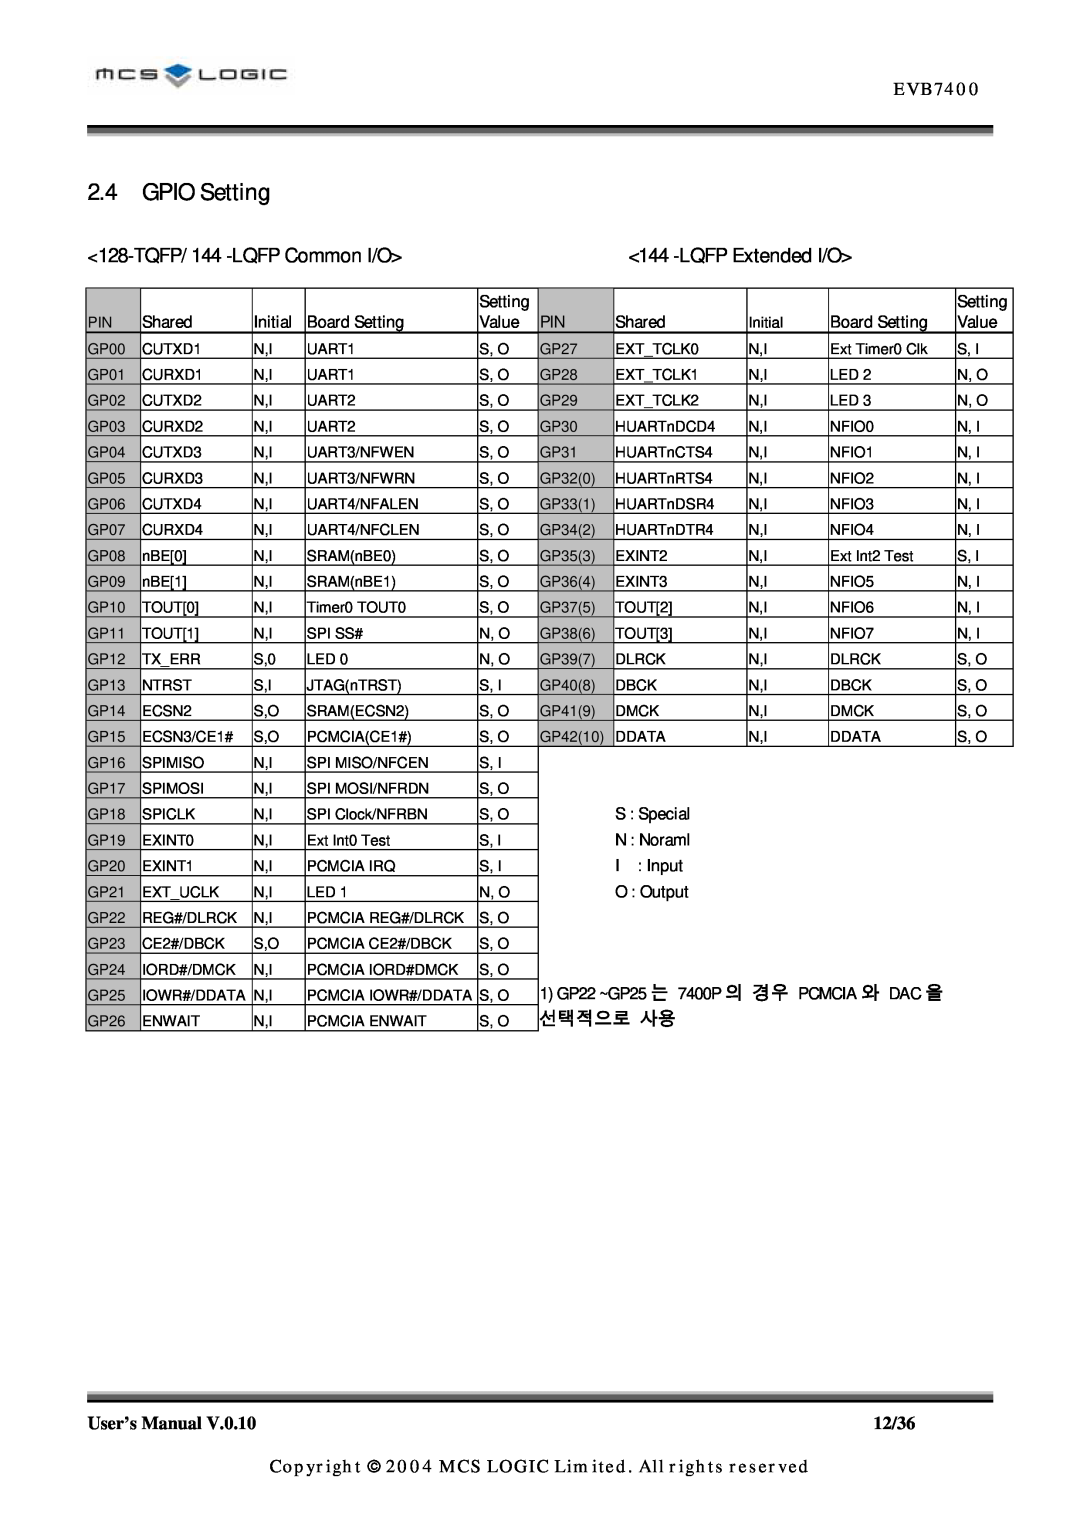 ADC MLN7400 manual GPIO Setting, TQFP/ 144 -LQFP Common I/O, LQFP Extended I/O, EVB7400, 선택적으로 사용 